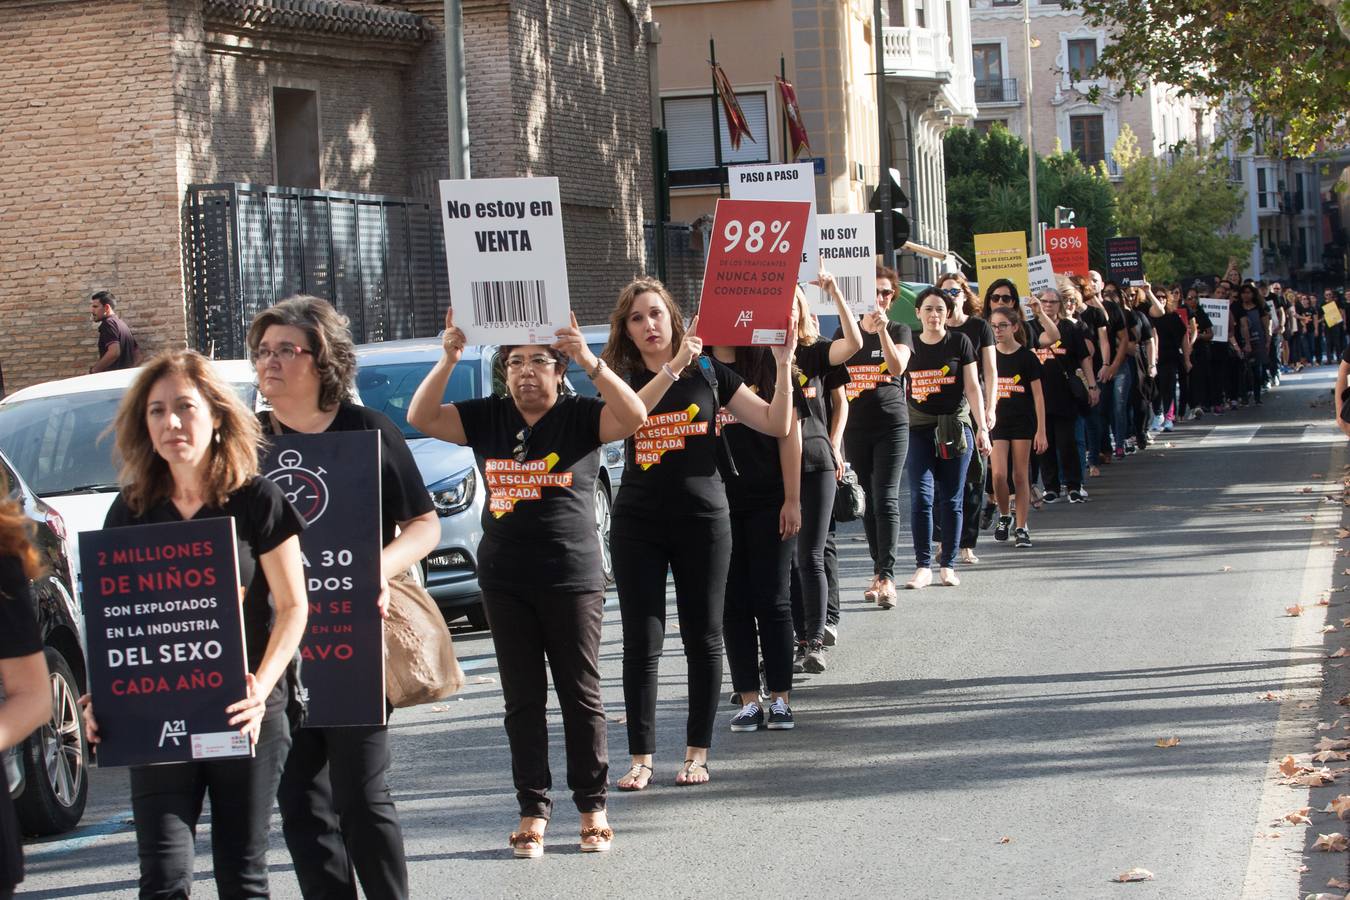 Murcia se ha sumado este sábado a la acción ciudadana 'Caminando por la libertad' que ha organizado la ONG A21